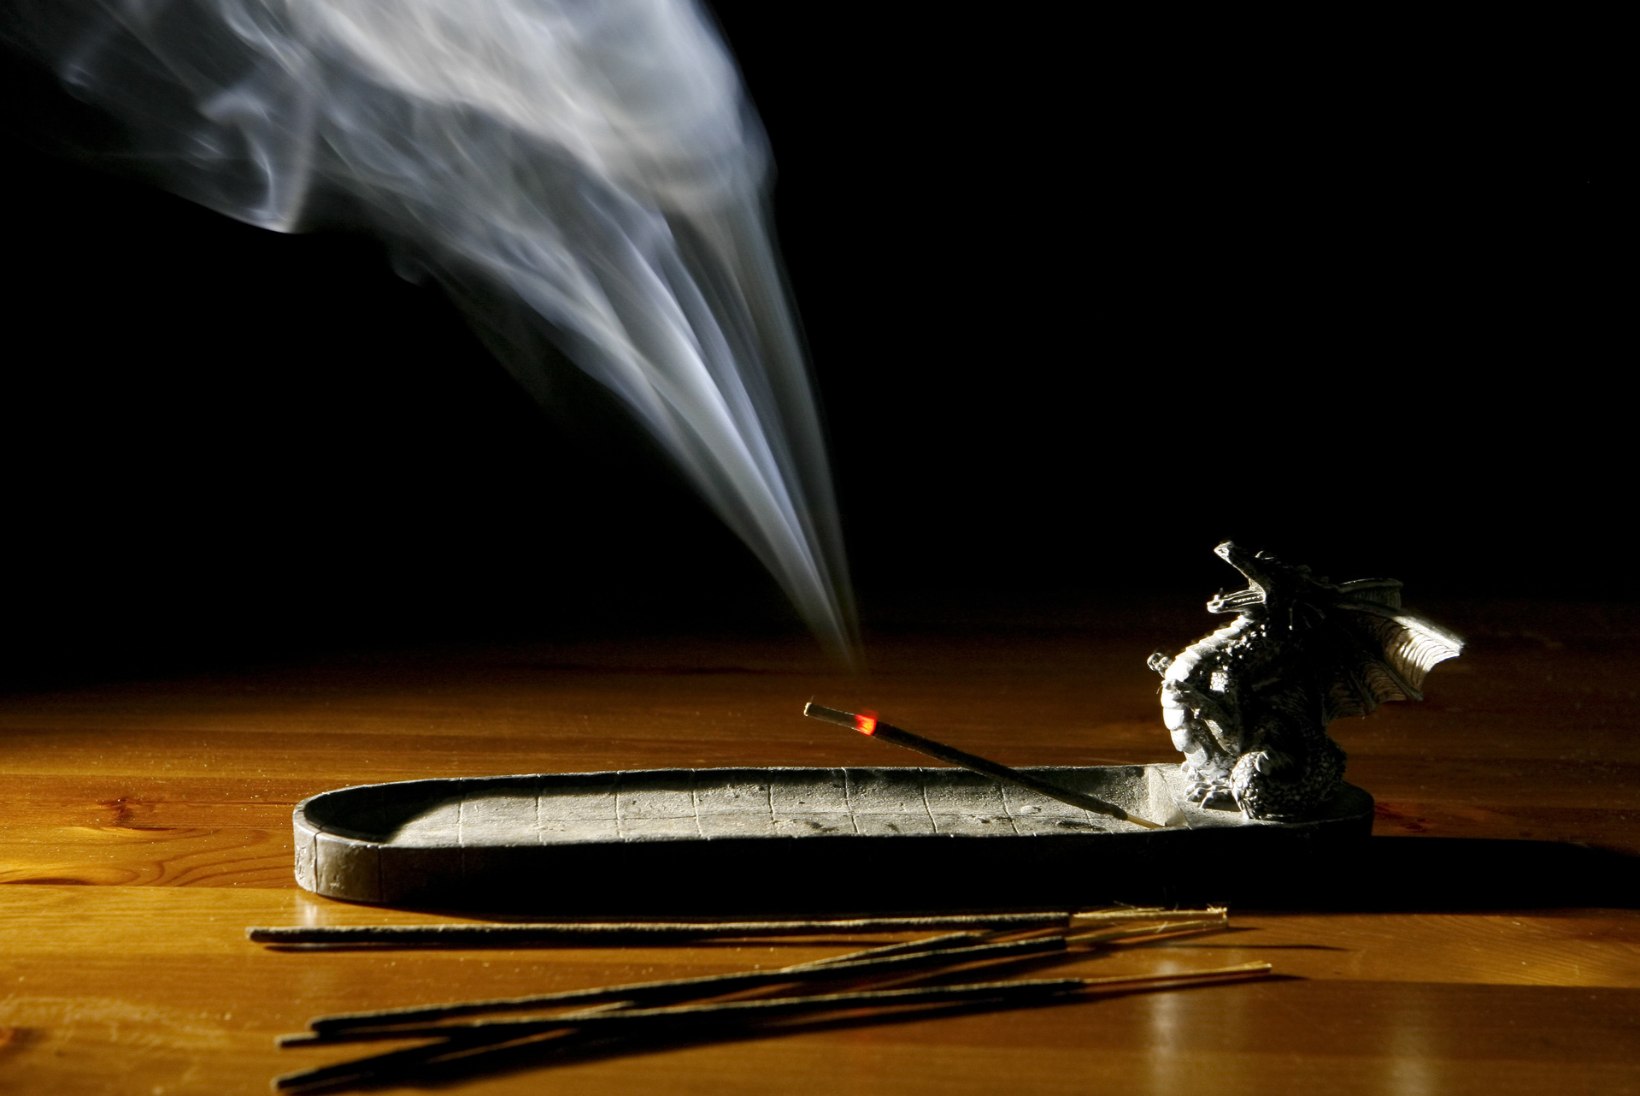 SOOME ARST: küünalde põletamine kahjustab tervist